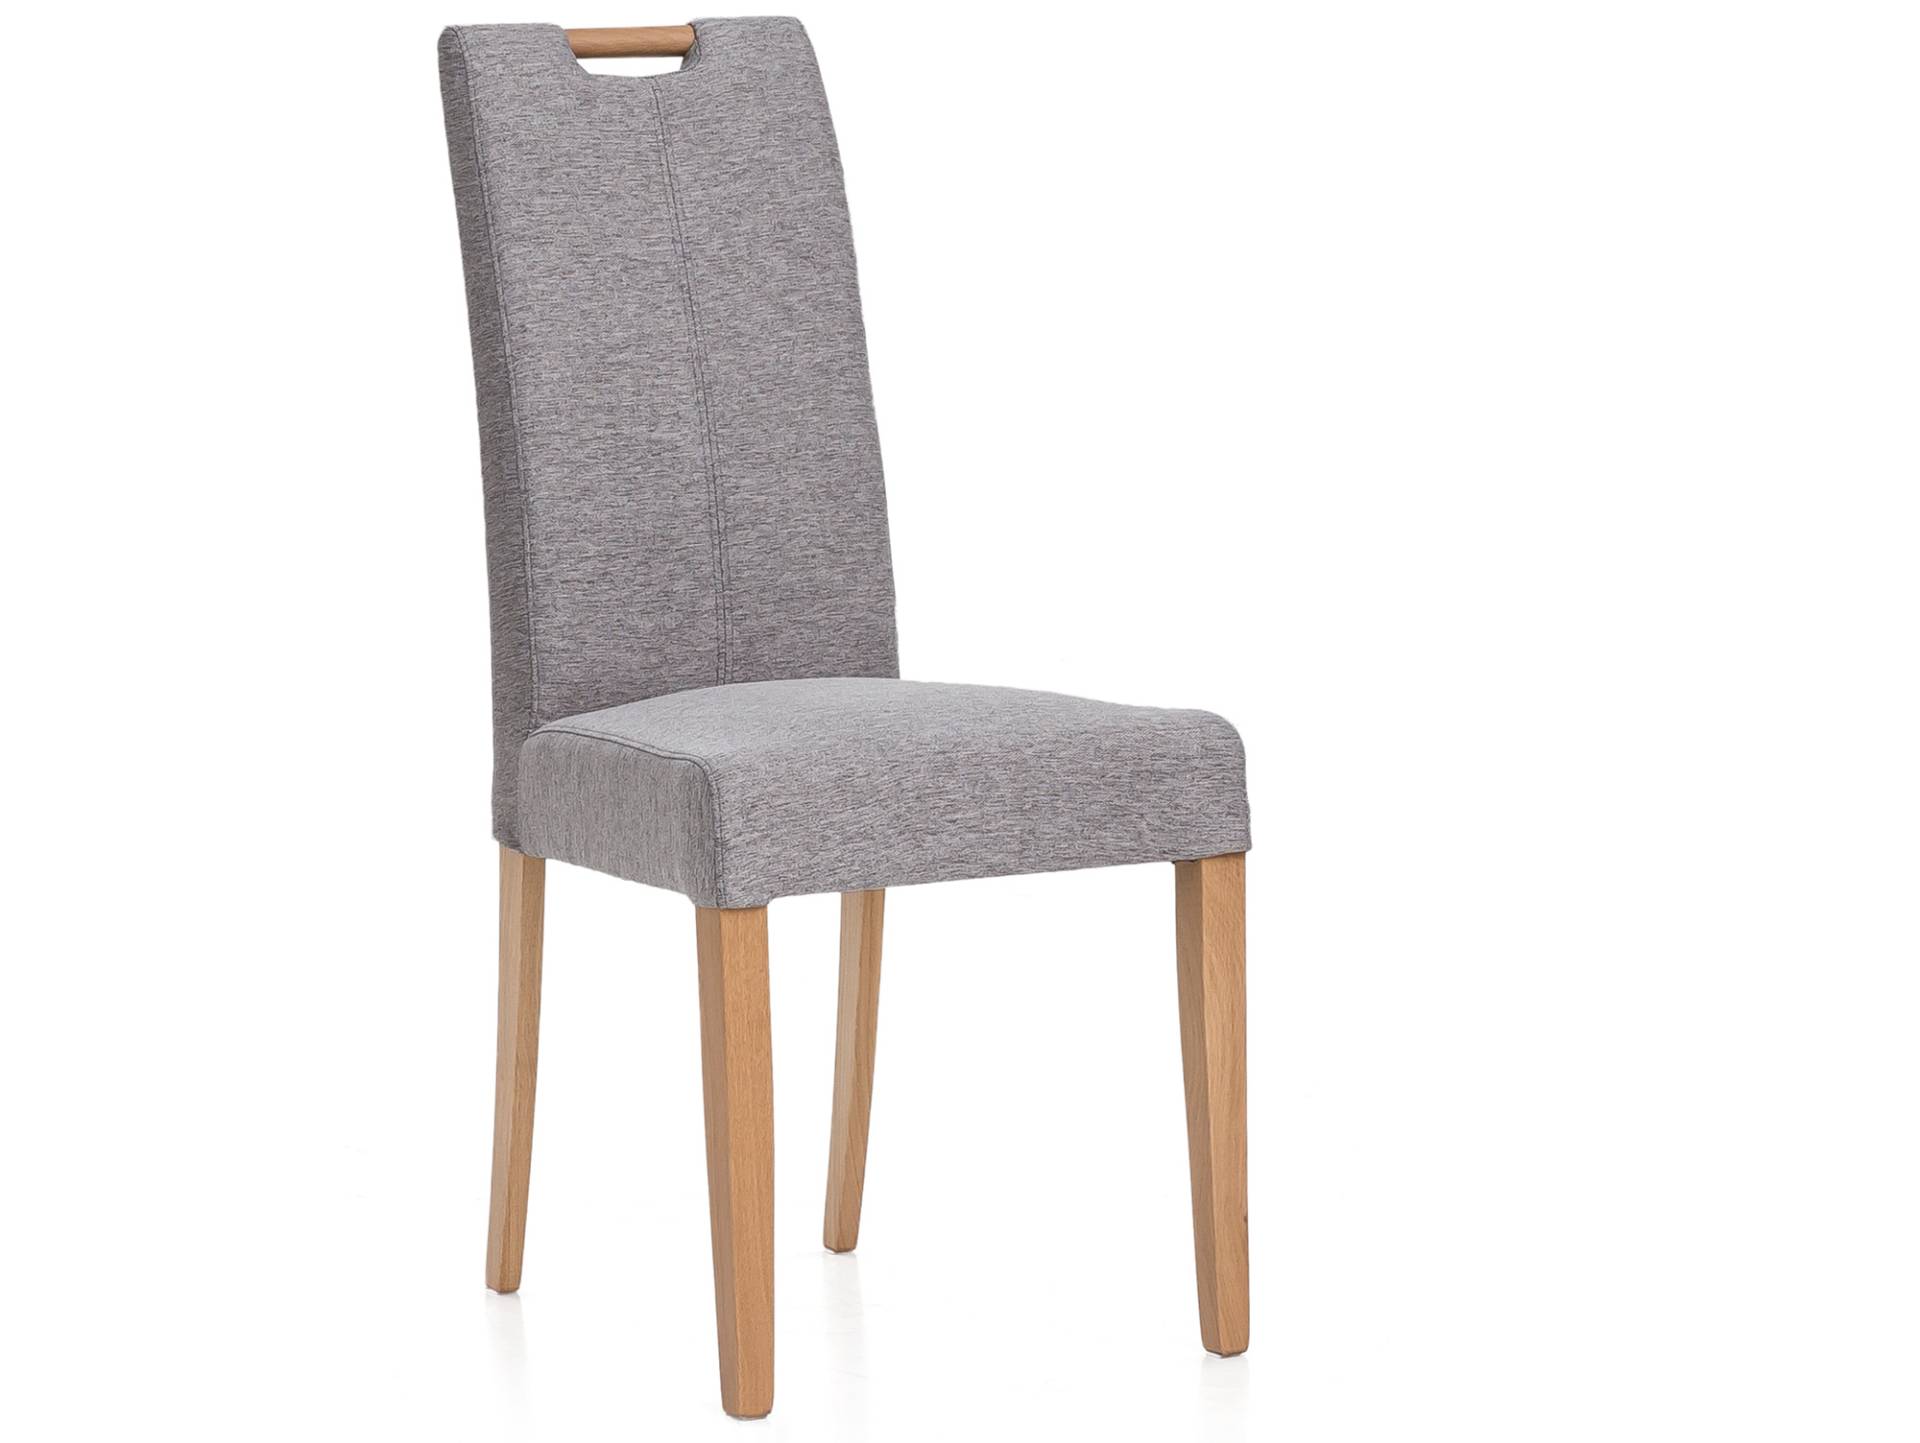 Stühle von MöbelEins. Günstig online kaufen bei Möbel